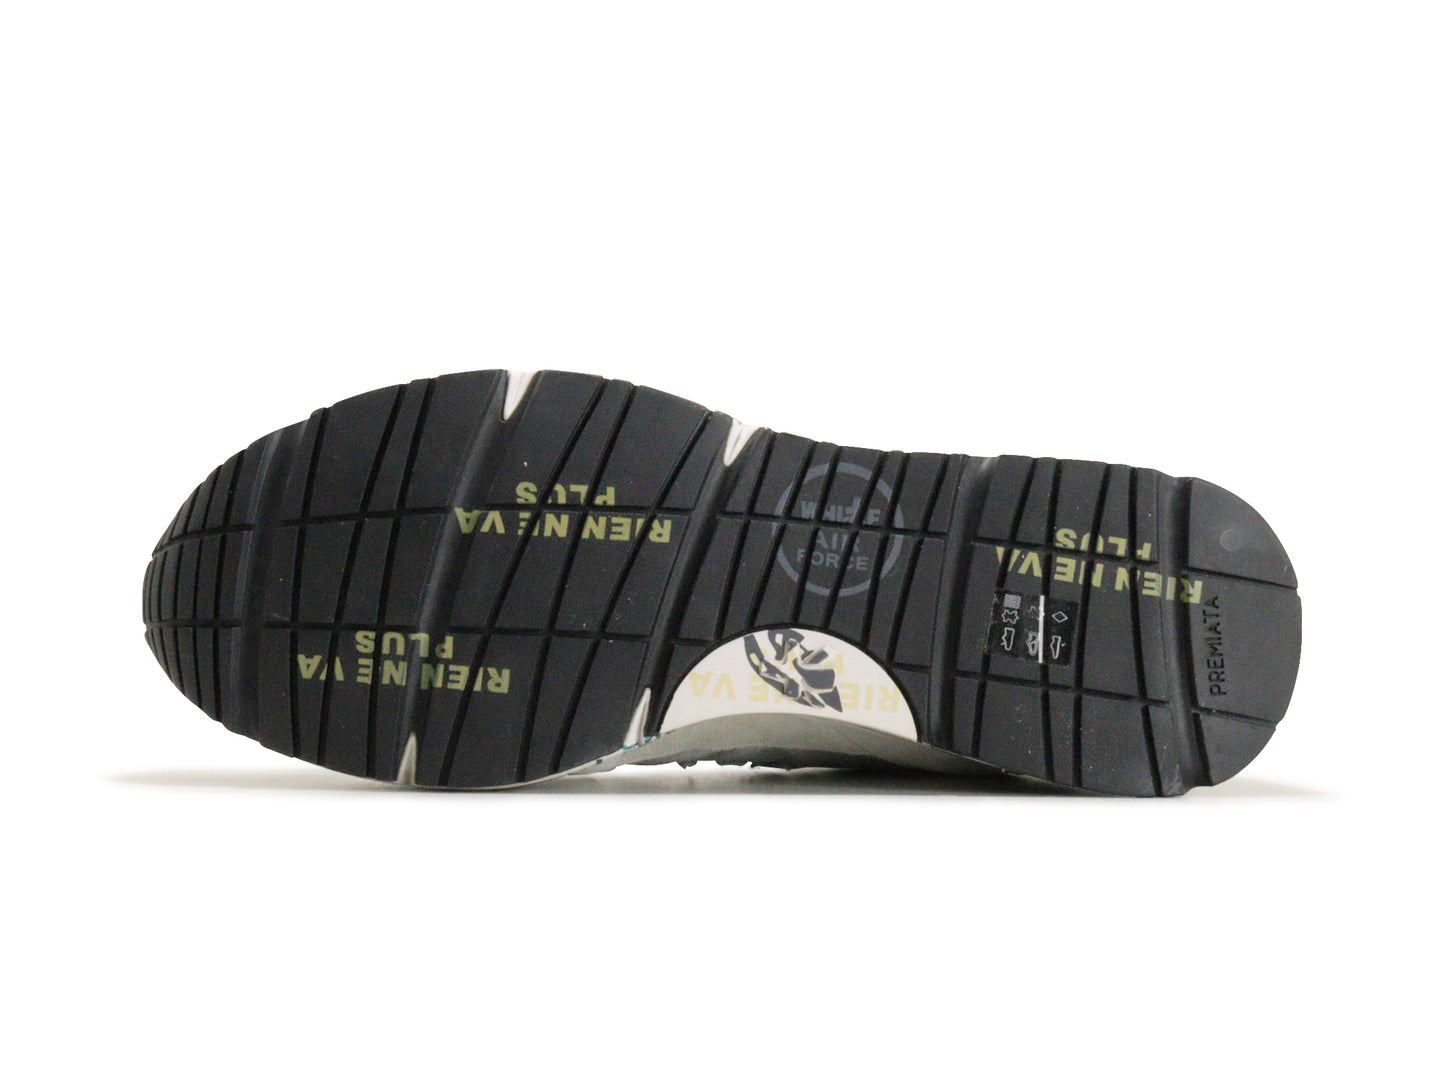 PREMIATAのスニーカー「3881」の靴底の商品画像